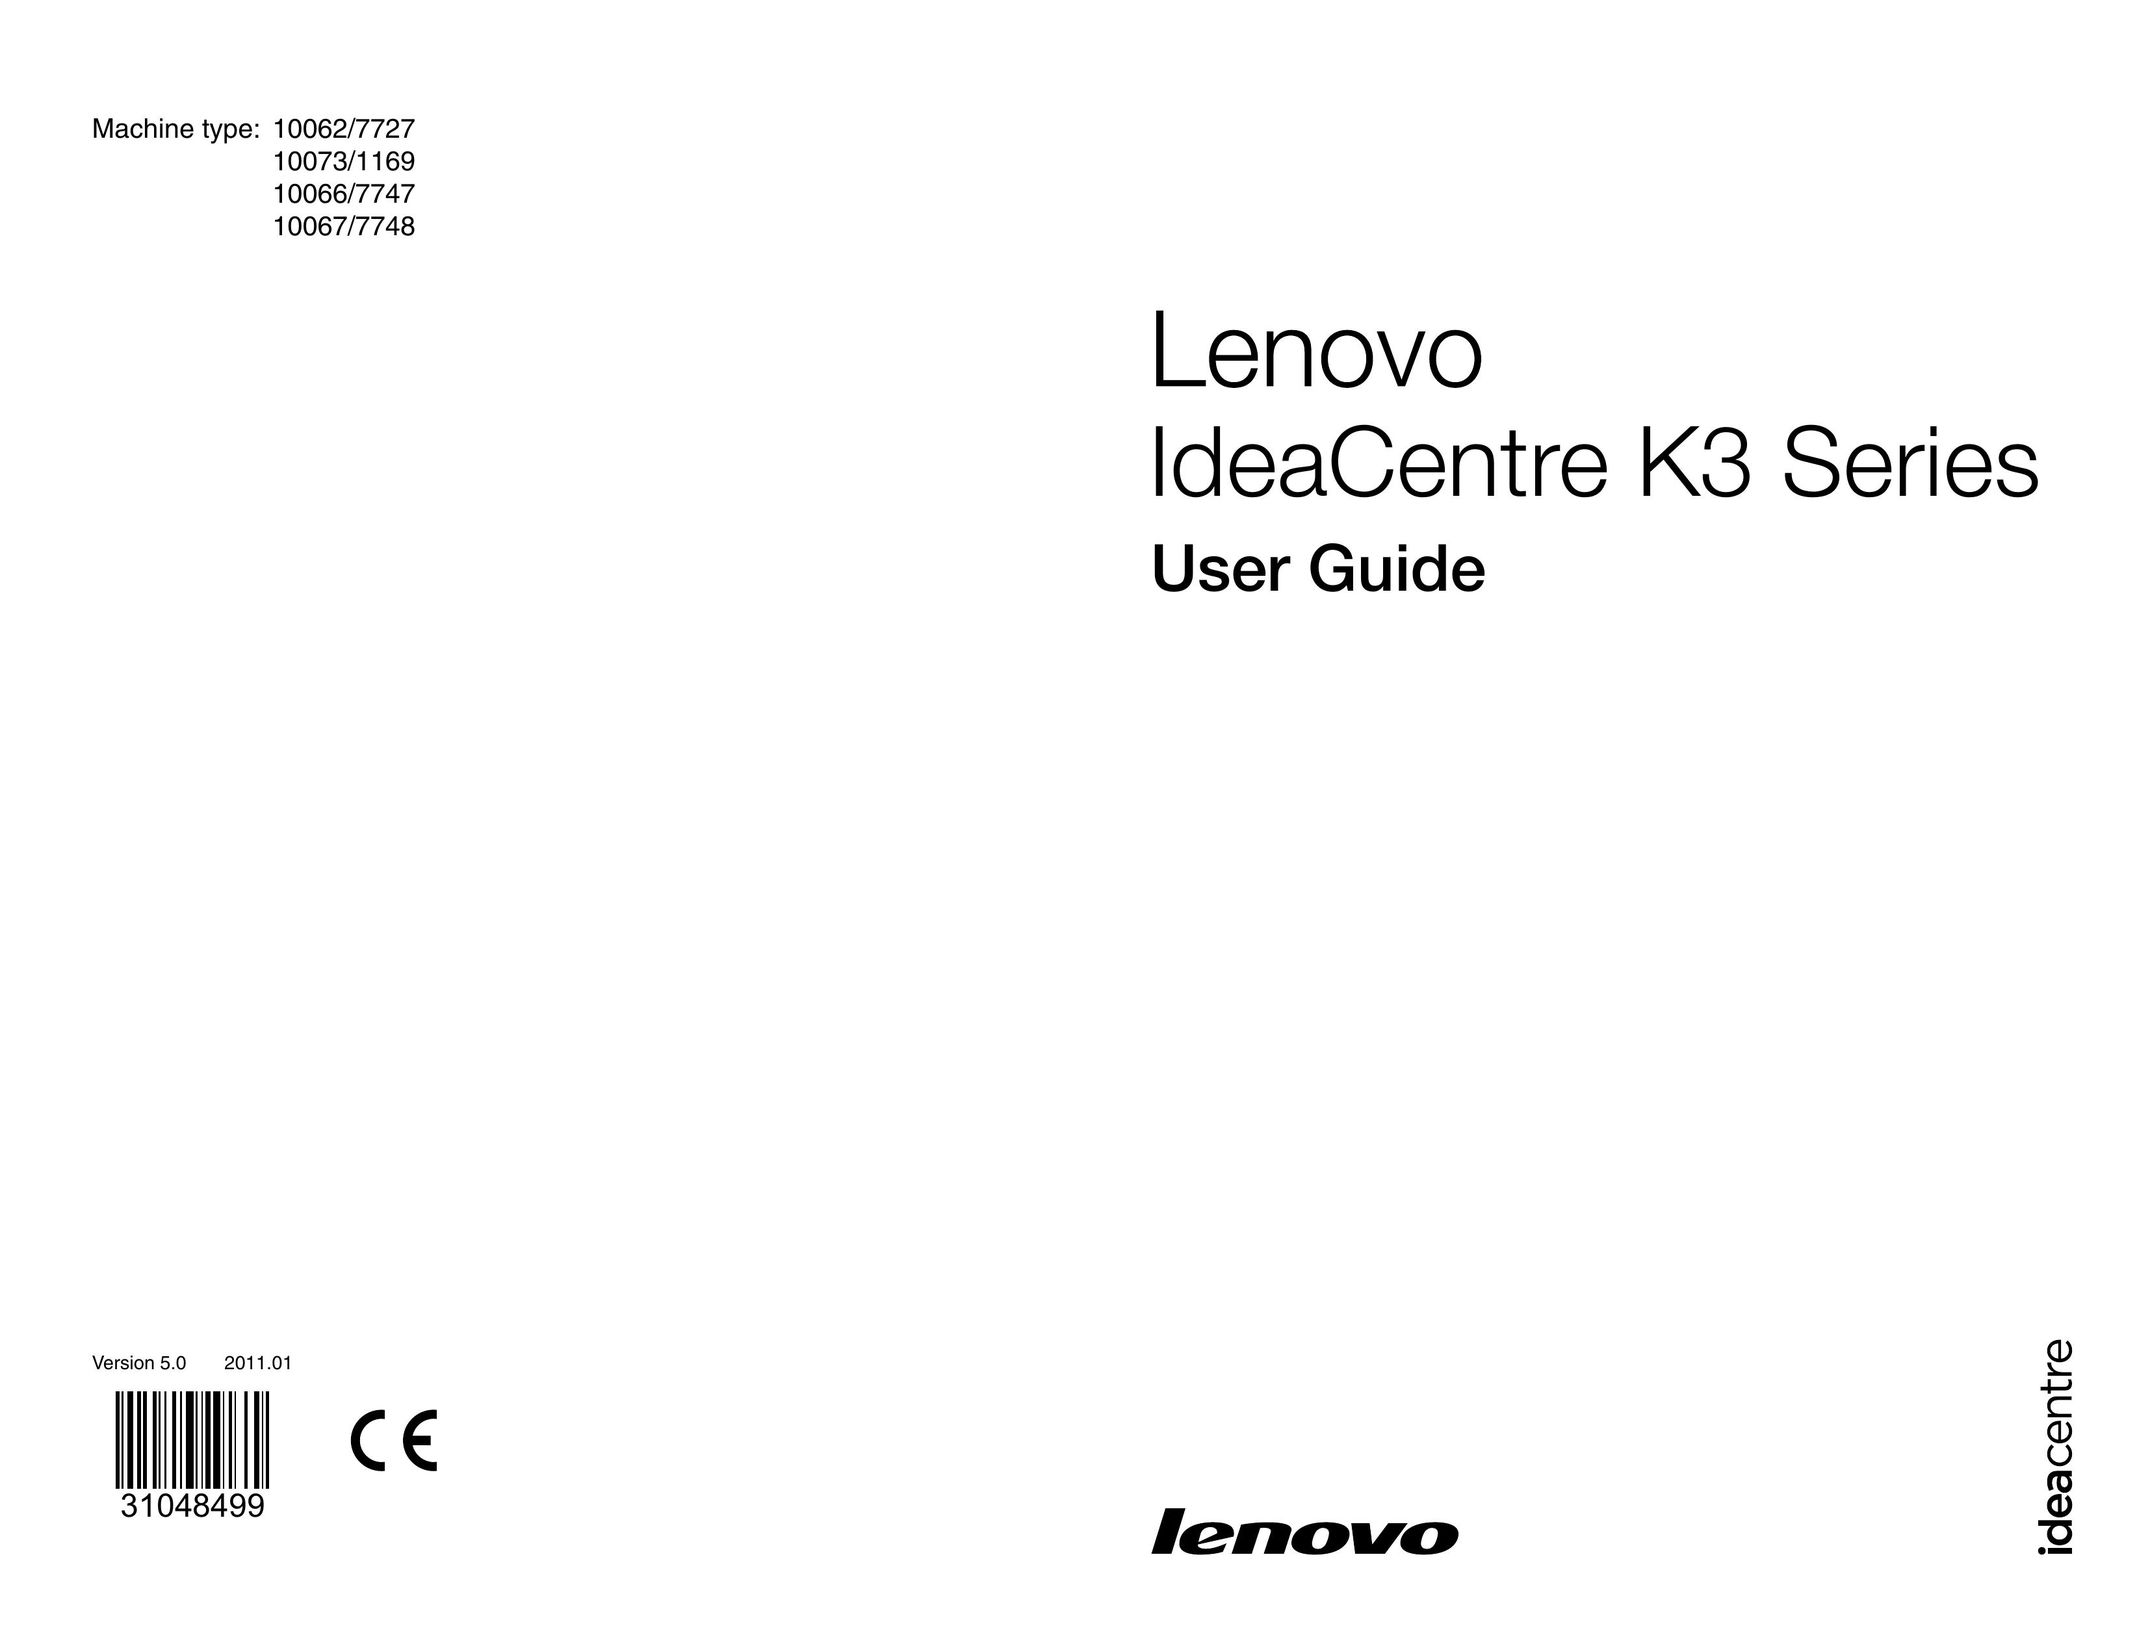 Lenovo 10073/1169 Tablet User Manual